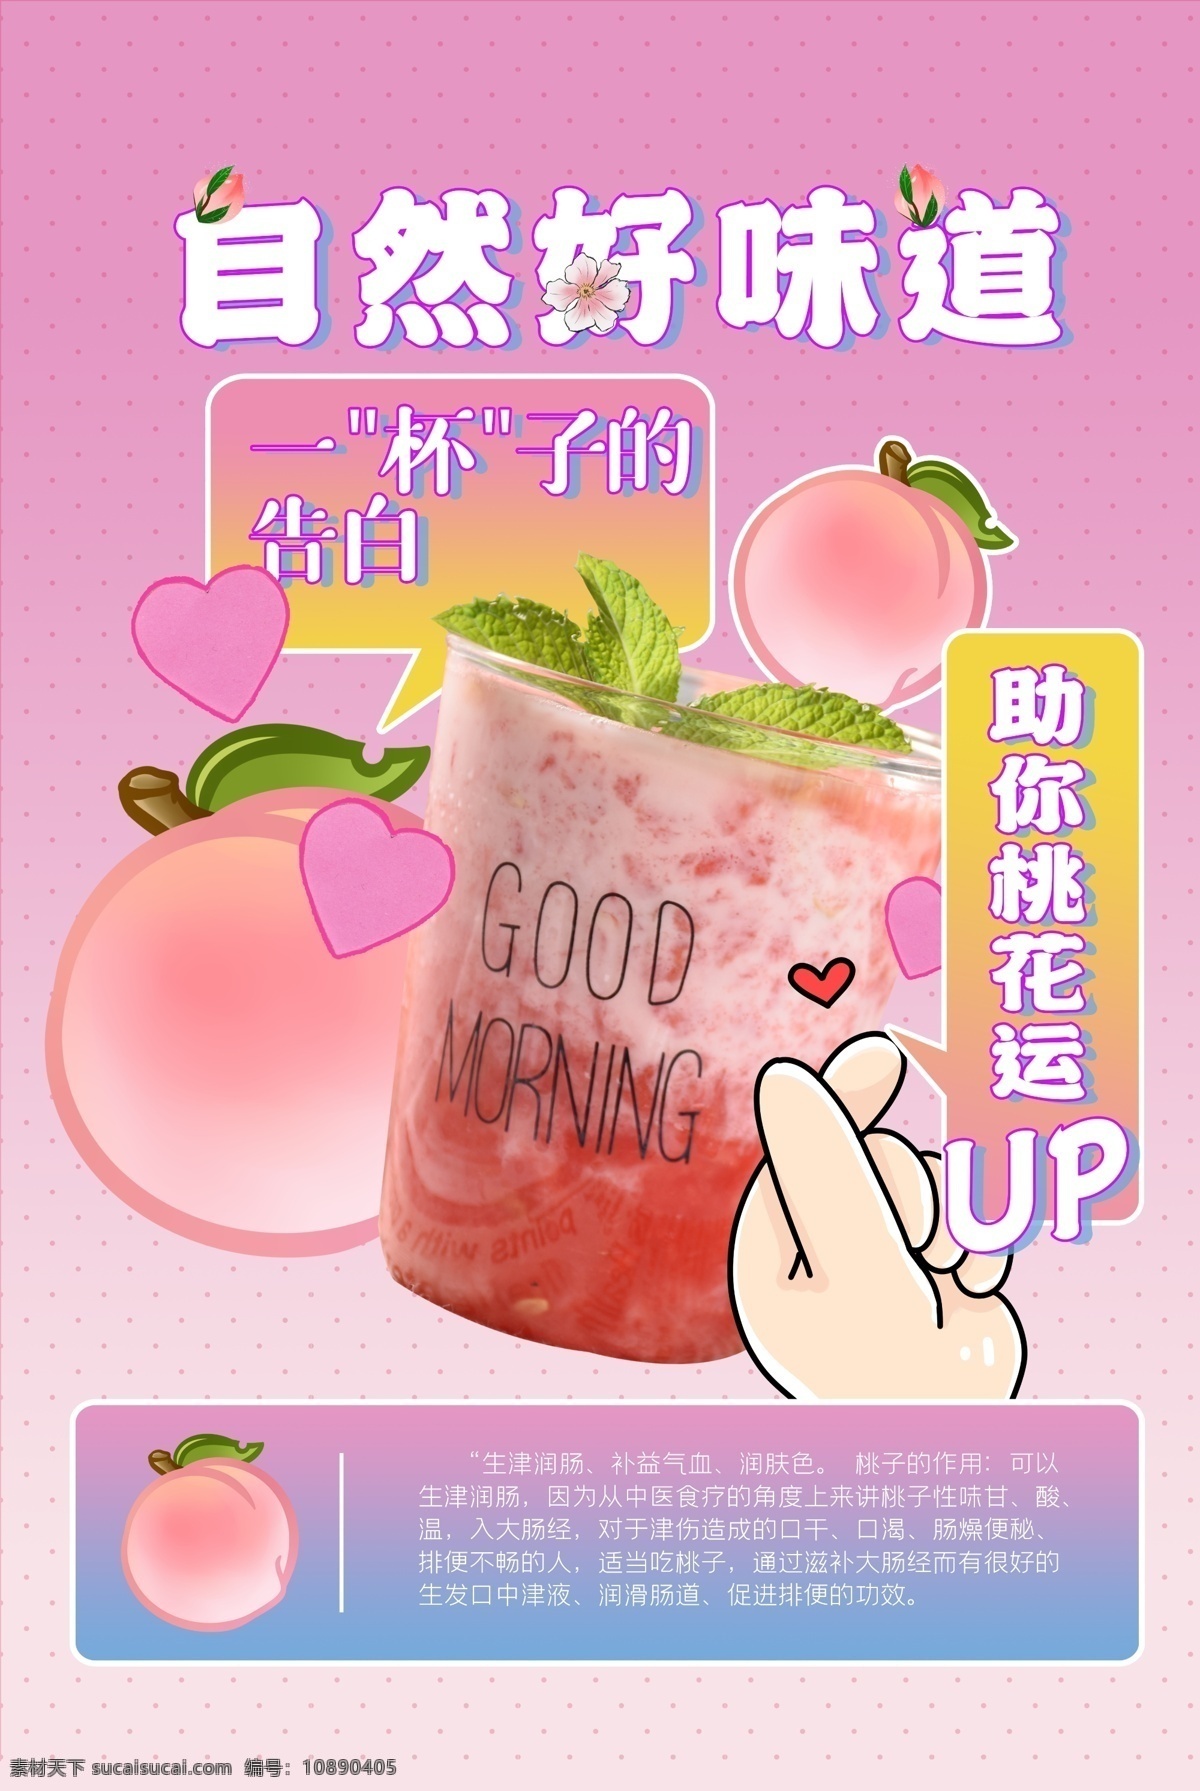 奶茶 饮品 促销活动 宣传海报 促销 活动 宣传 海报 饮料 甜品 类